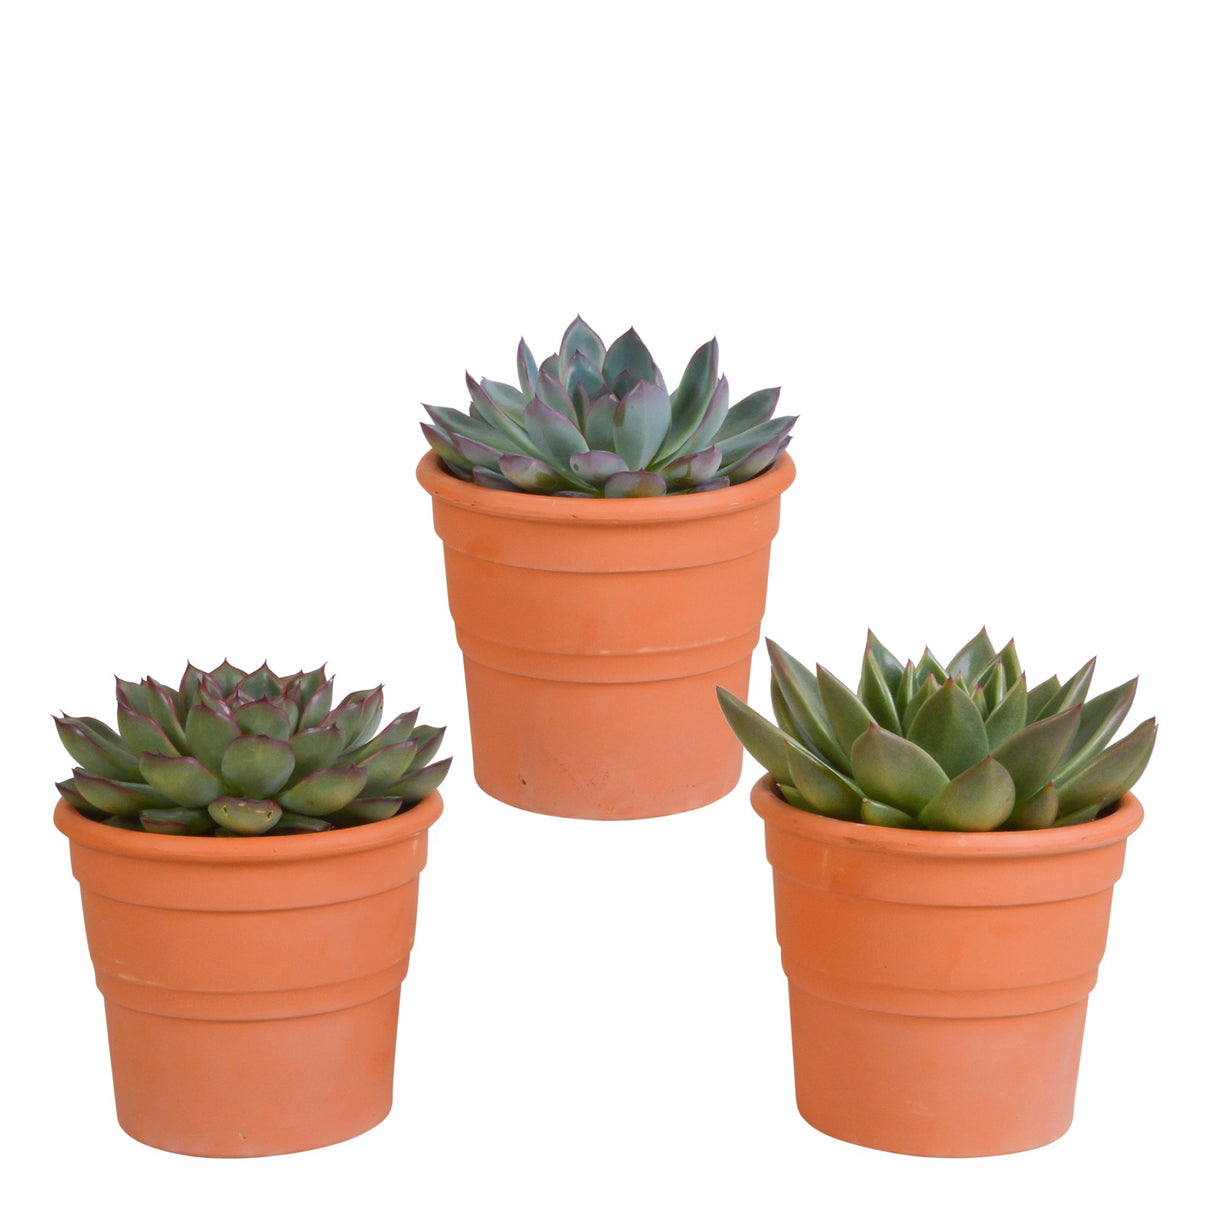 Livraison plante Coffret cadeau echeveria et ses caches - pots terracotta - Lot de 3 plantes, h21cm